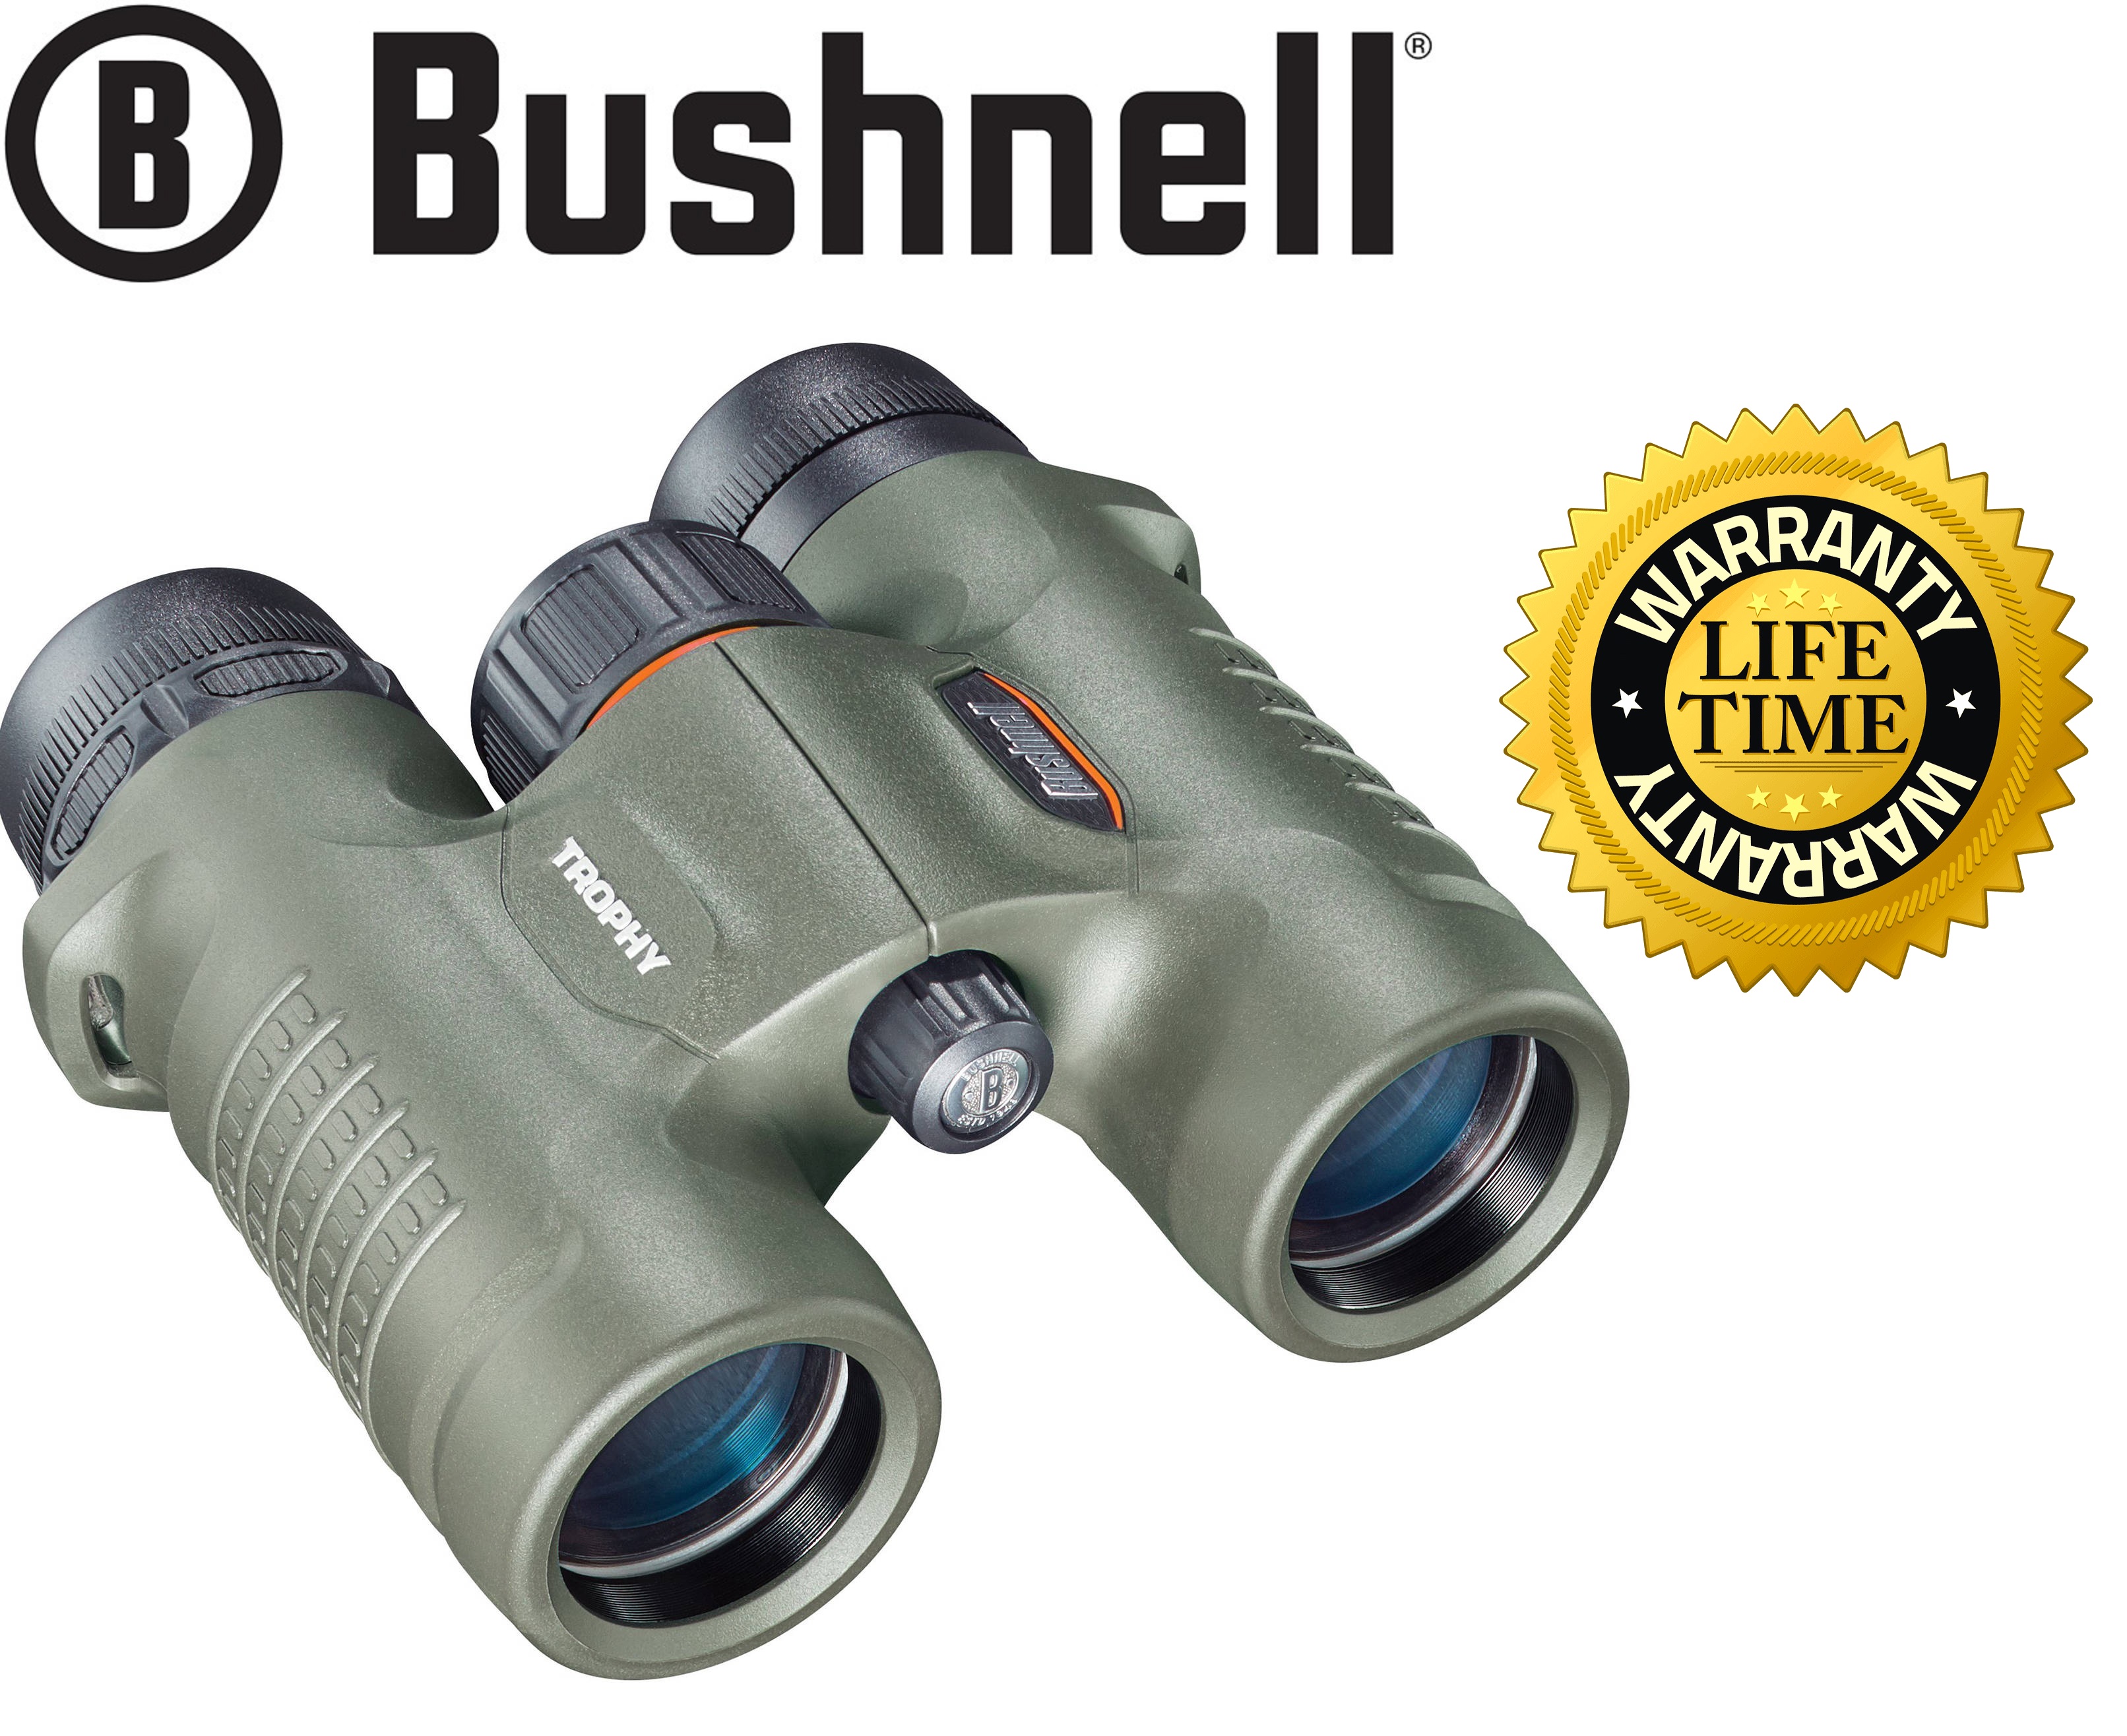 bushnell-8x32-trophy-binocular-green